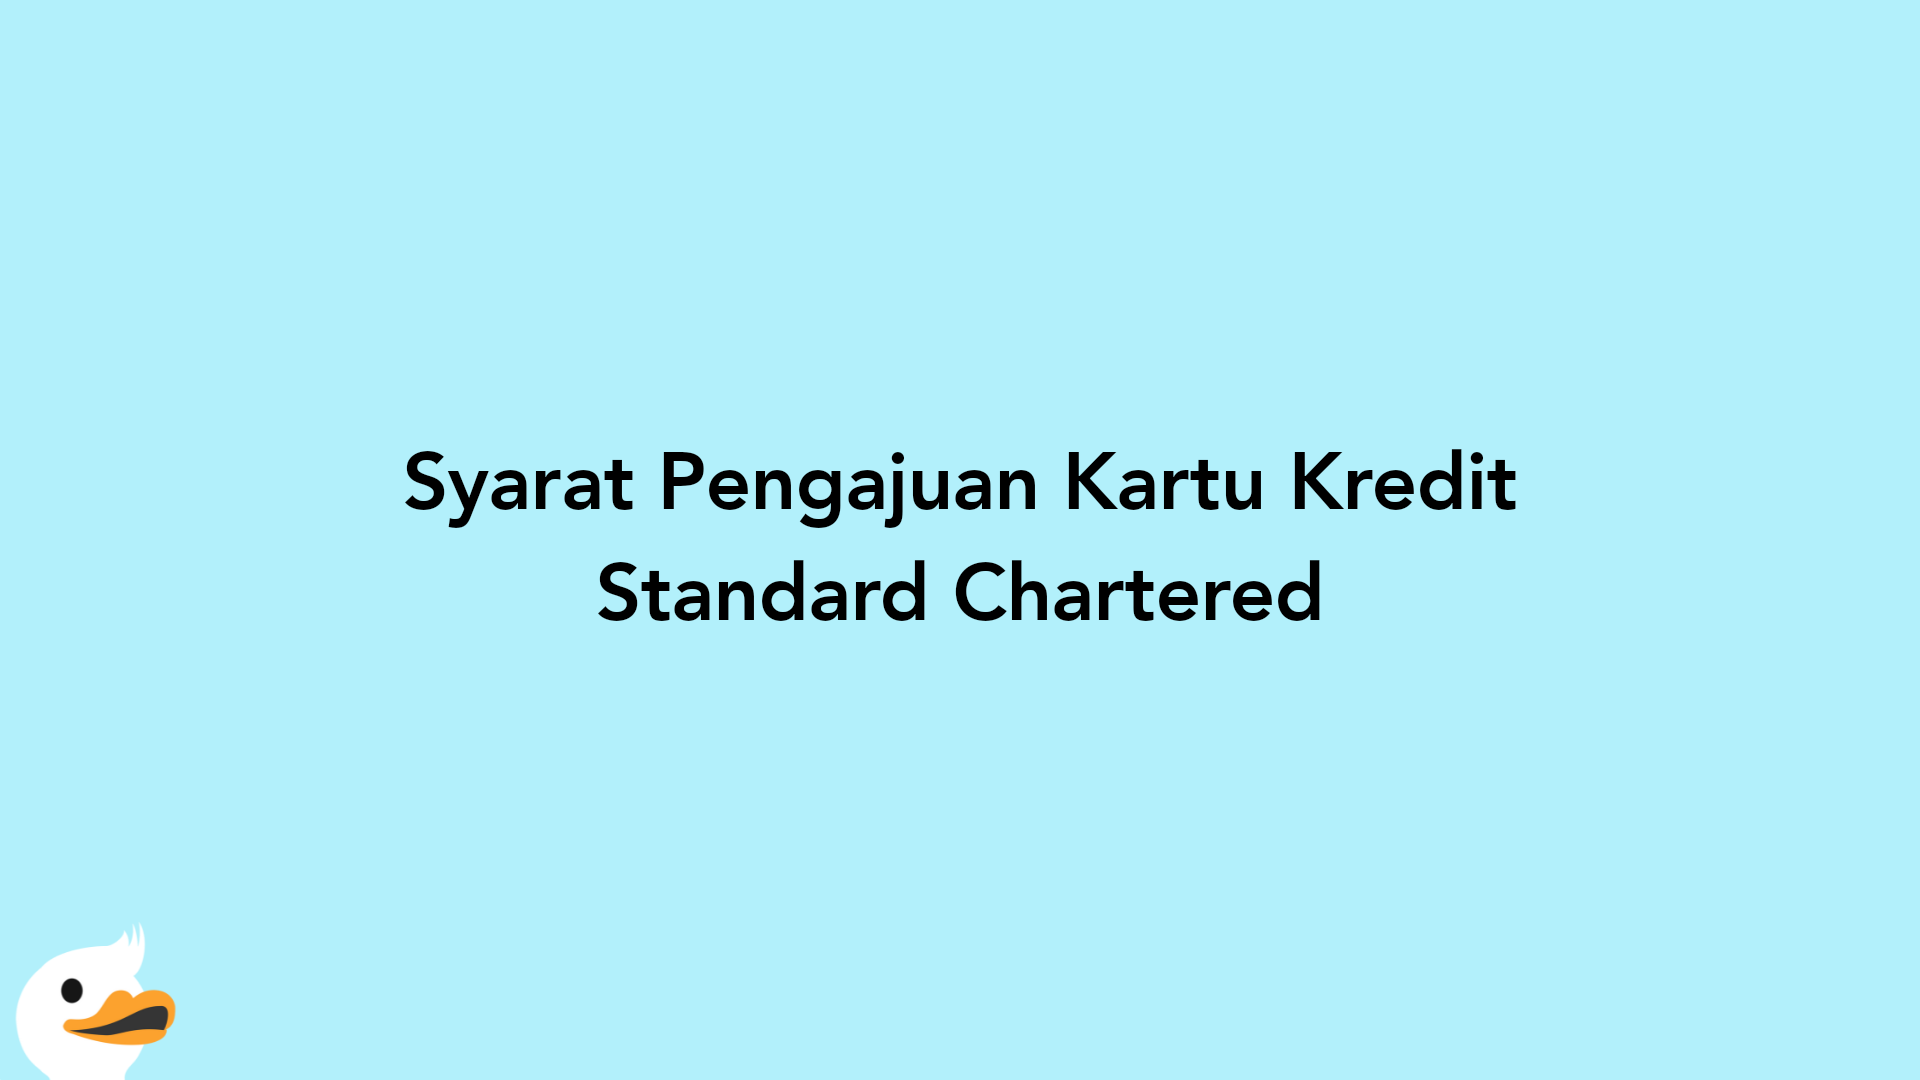 Syarat Pengajuan Kartu Kredit Standard Chartered